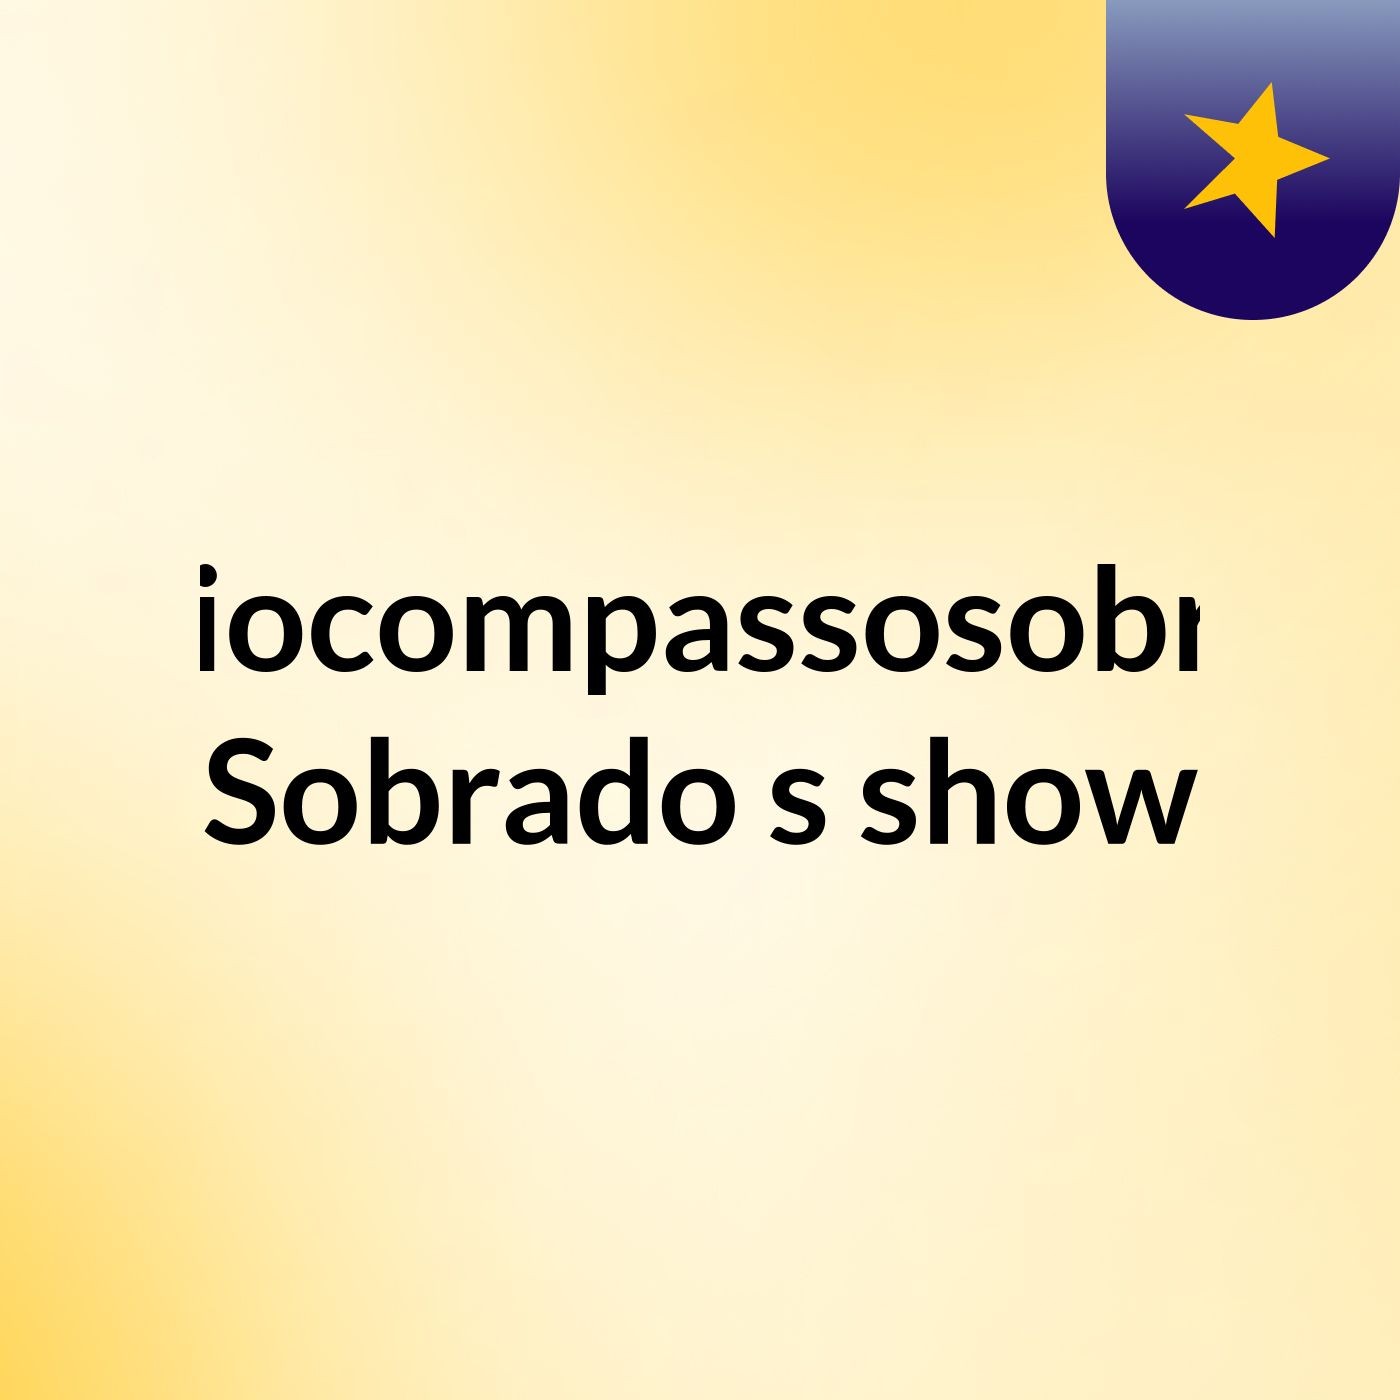 Rádiocompassosobrado Sobrado's show